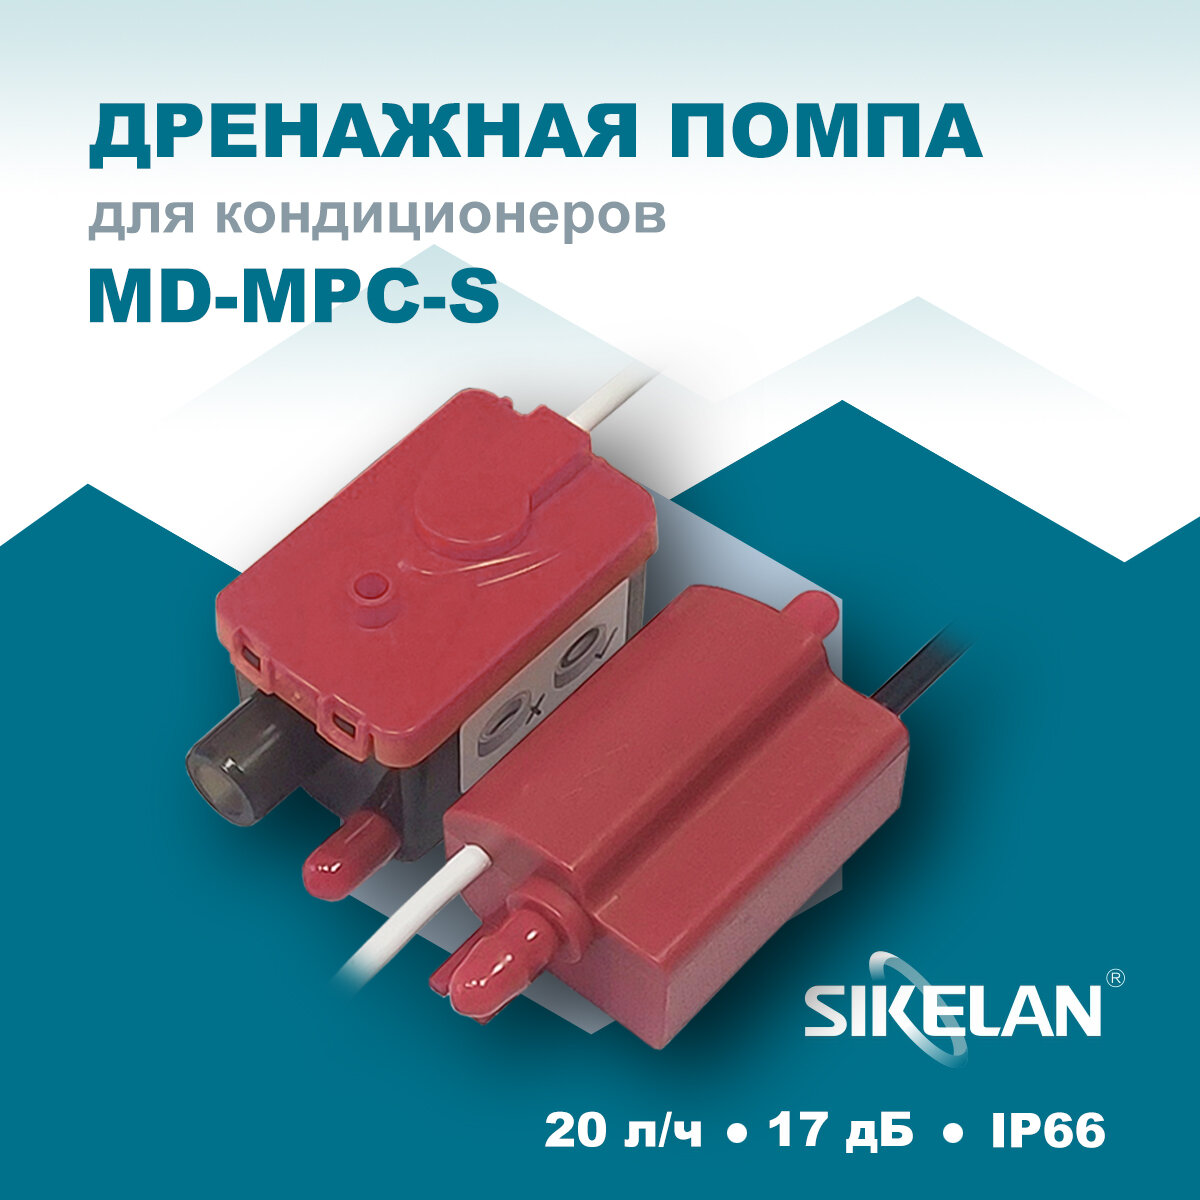 Дренажная помпа Sikelan MD-MPC-S